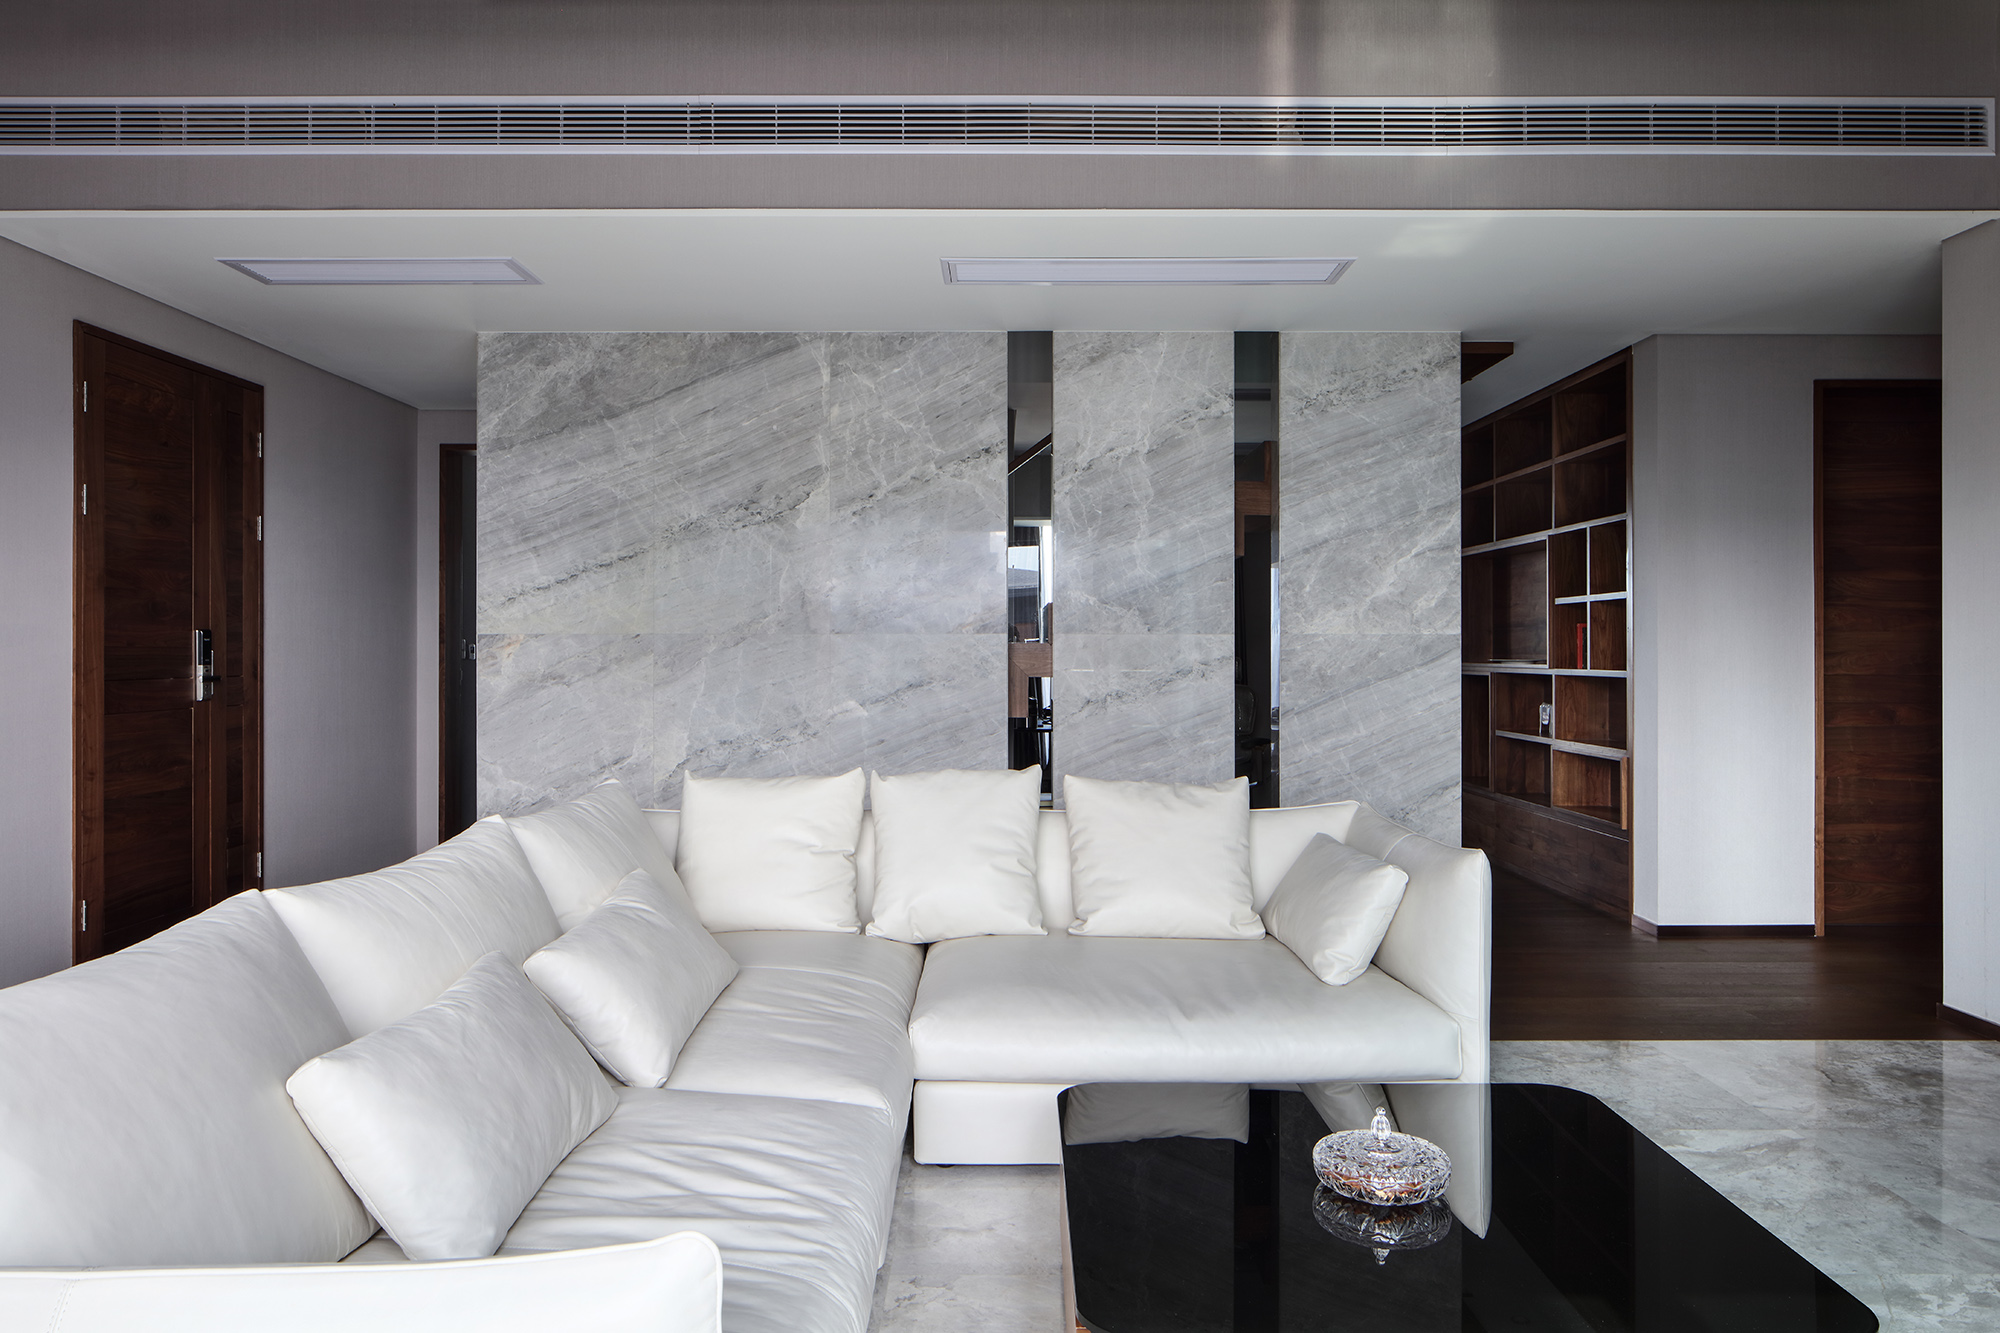 沙发围合式的陈设方式满足了主人基本的社交需求，大理石作为地板，美式格调浓郁。